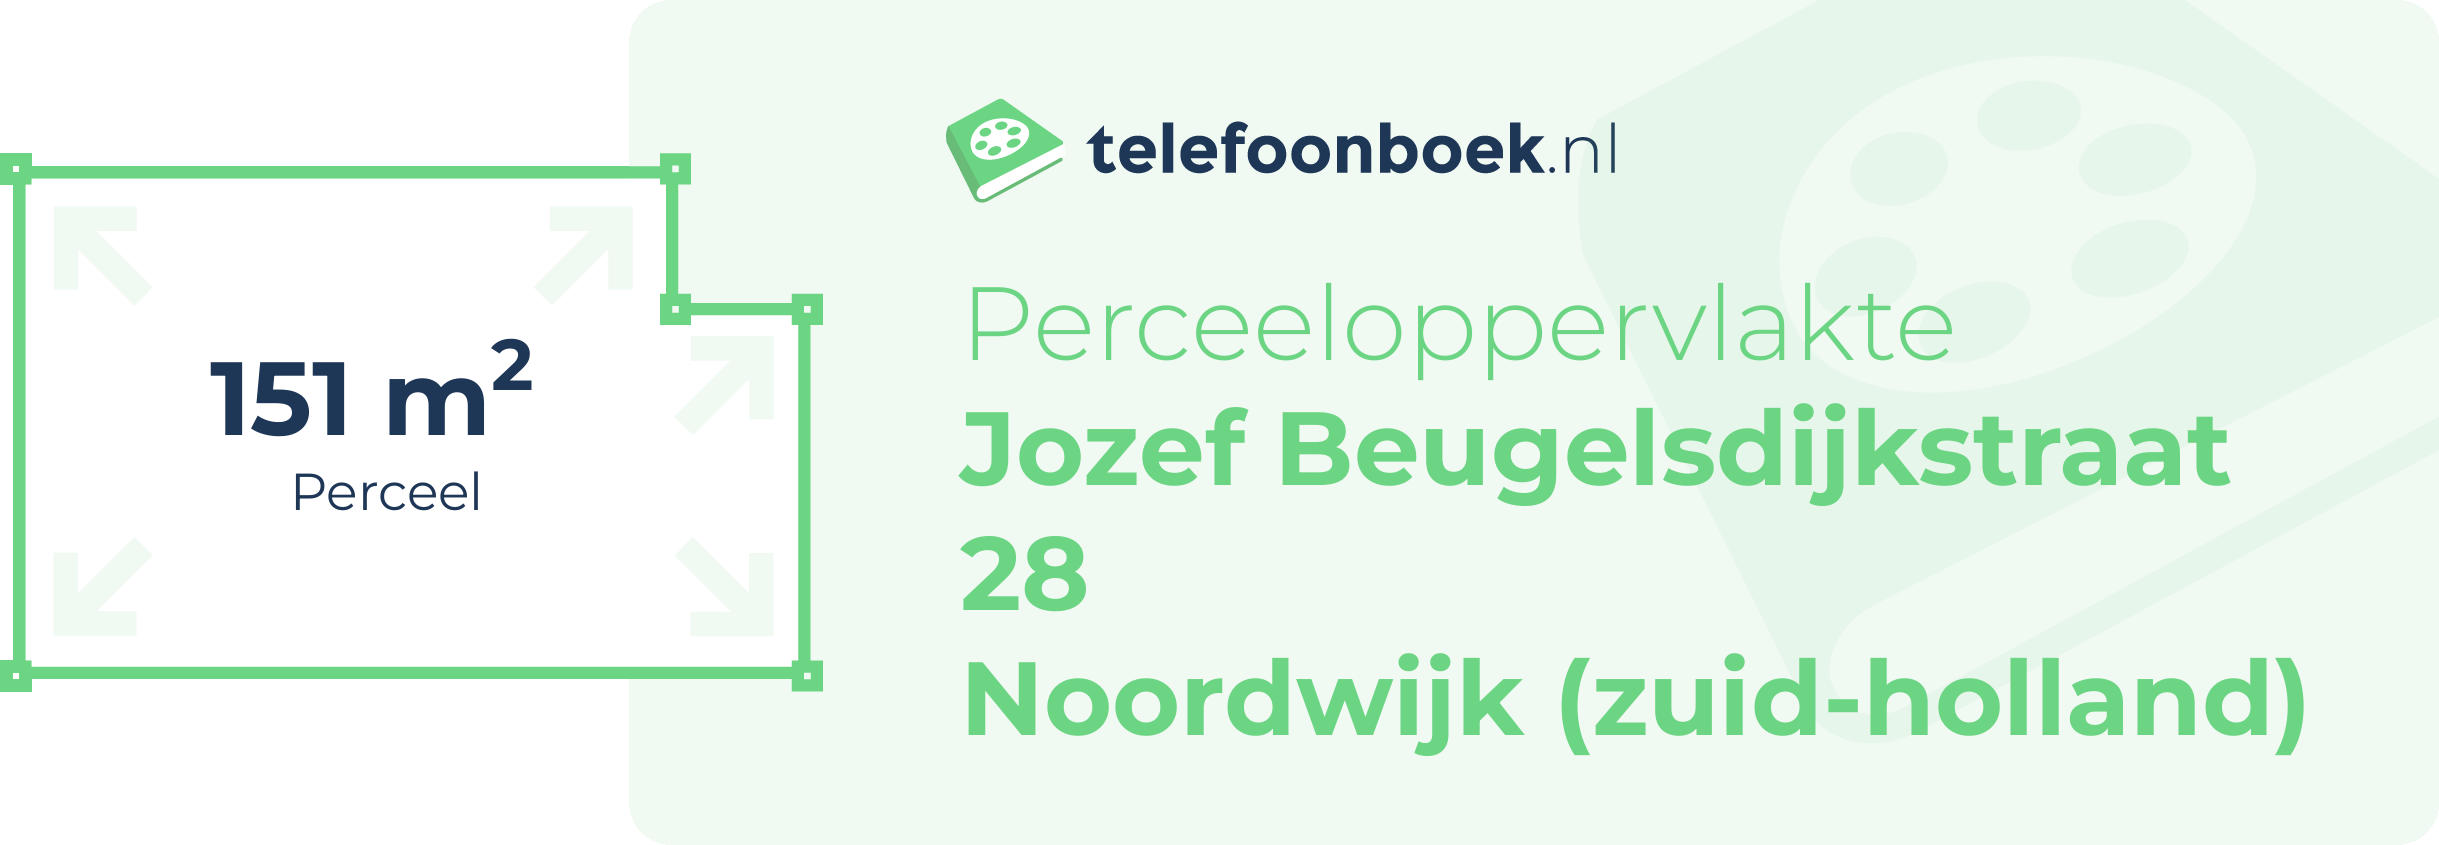 Perceeloppervlakte Jozef Beugelsdijkstraat 28 Noordwijk (Zuid-Holland)